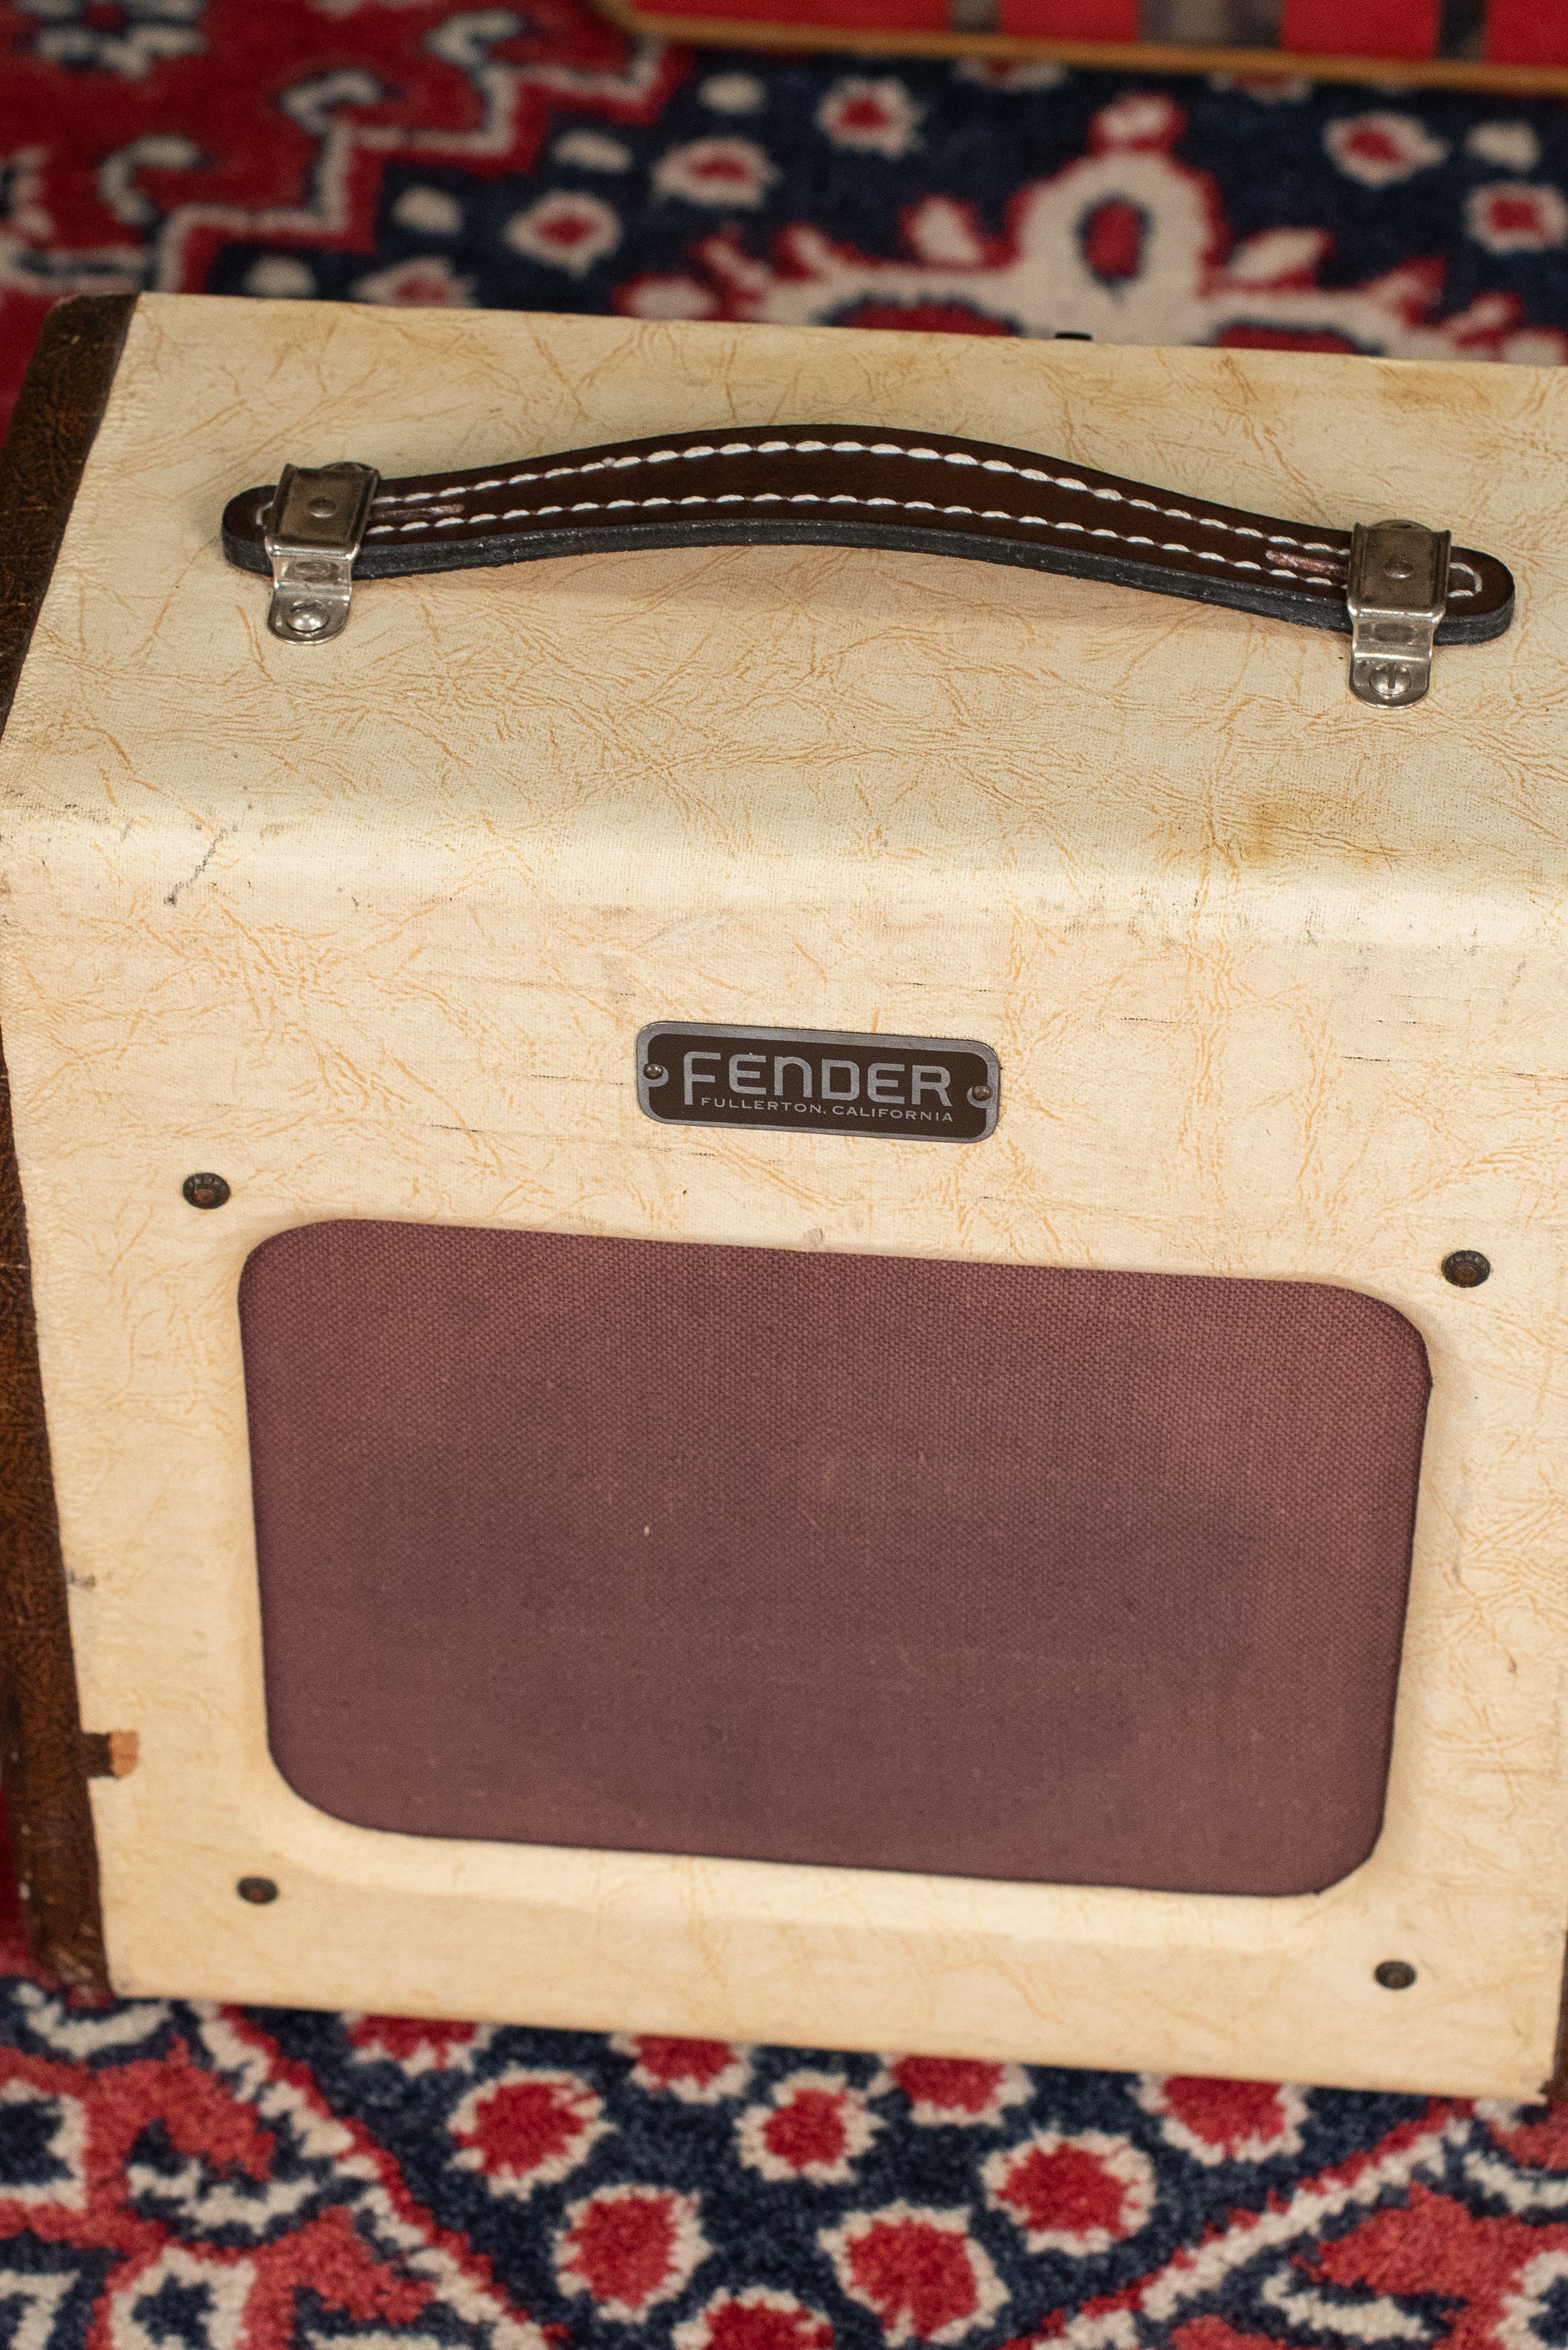 Vintage Fender guitar amplifier cream white brown